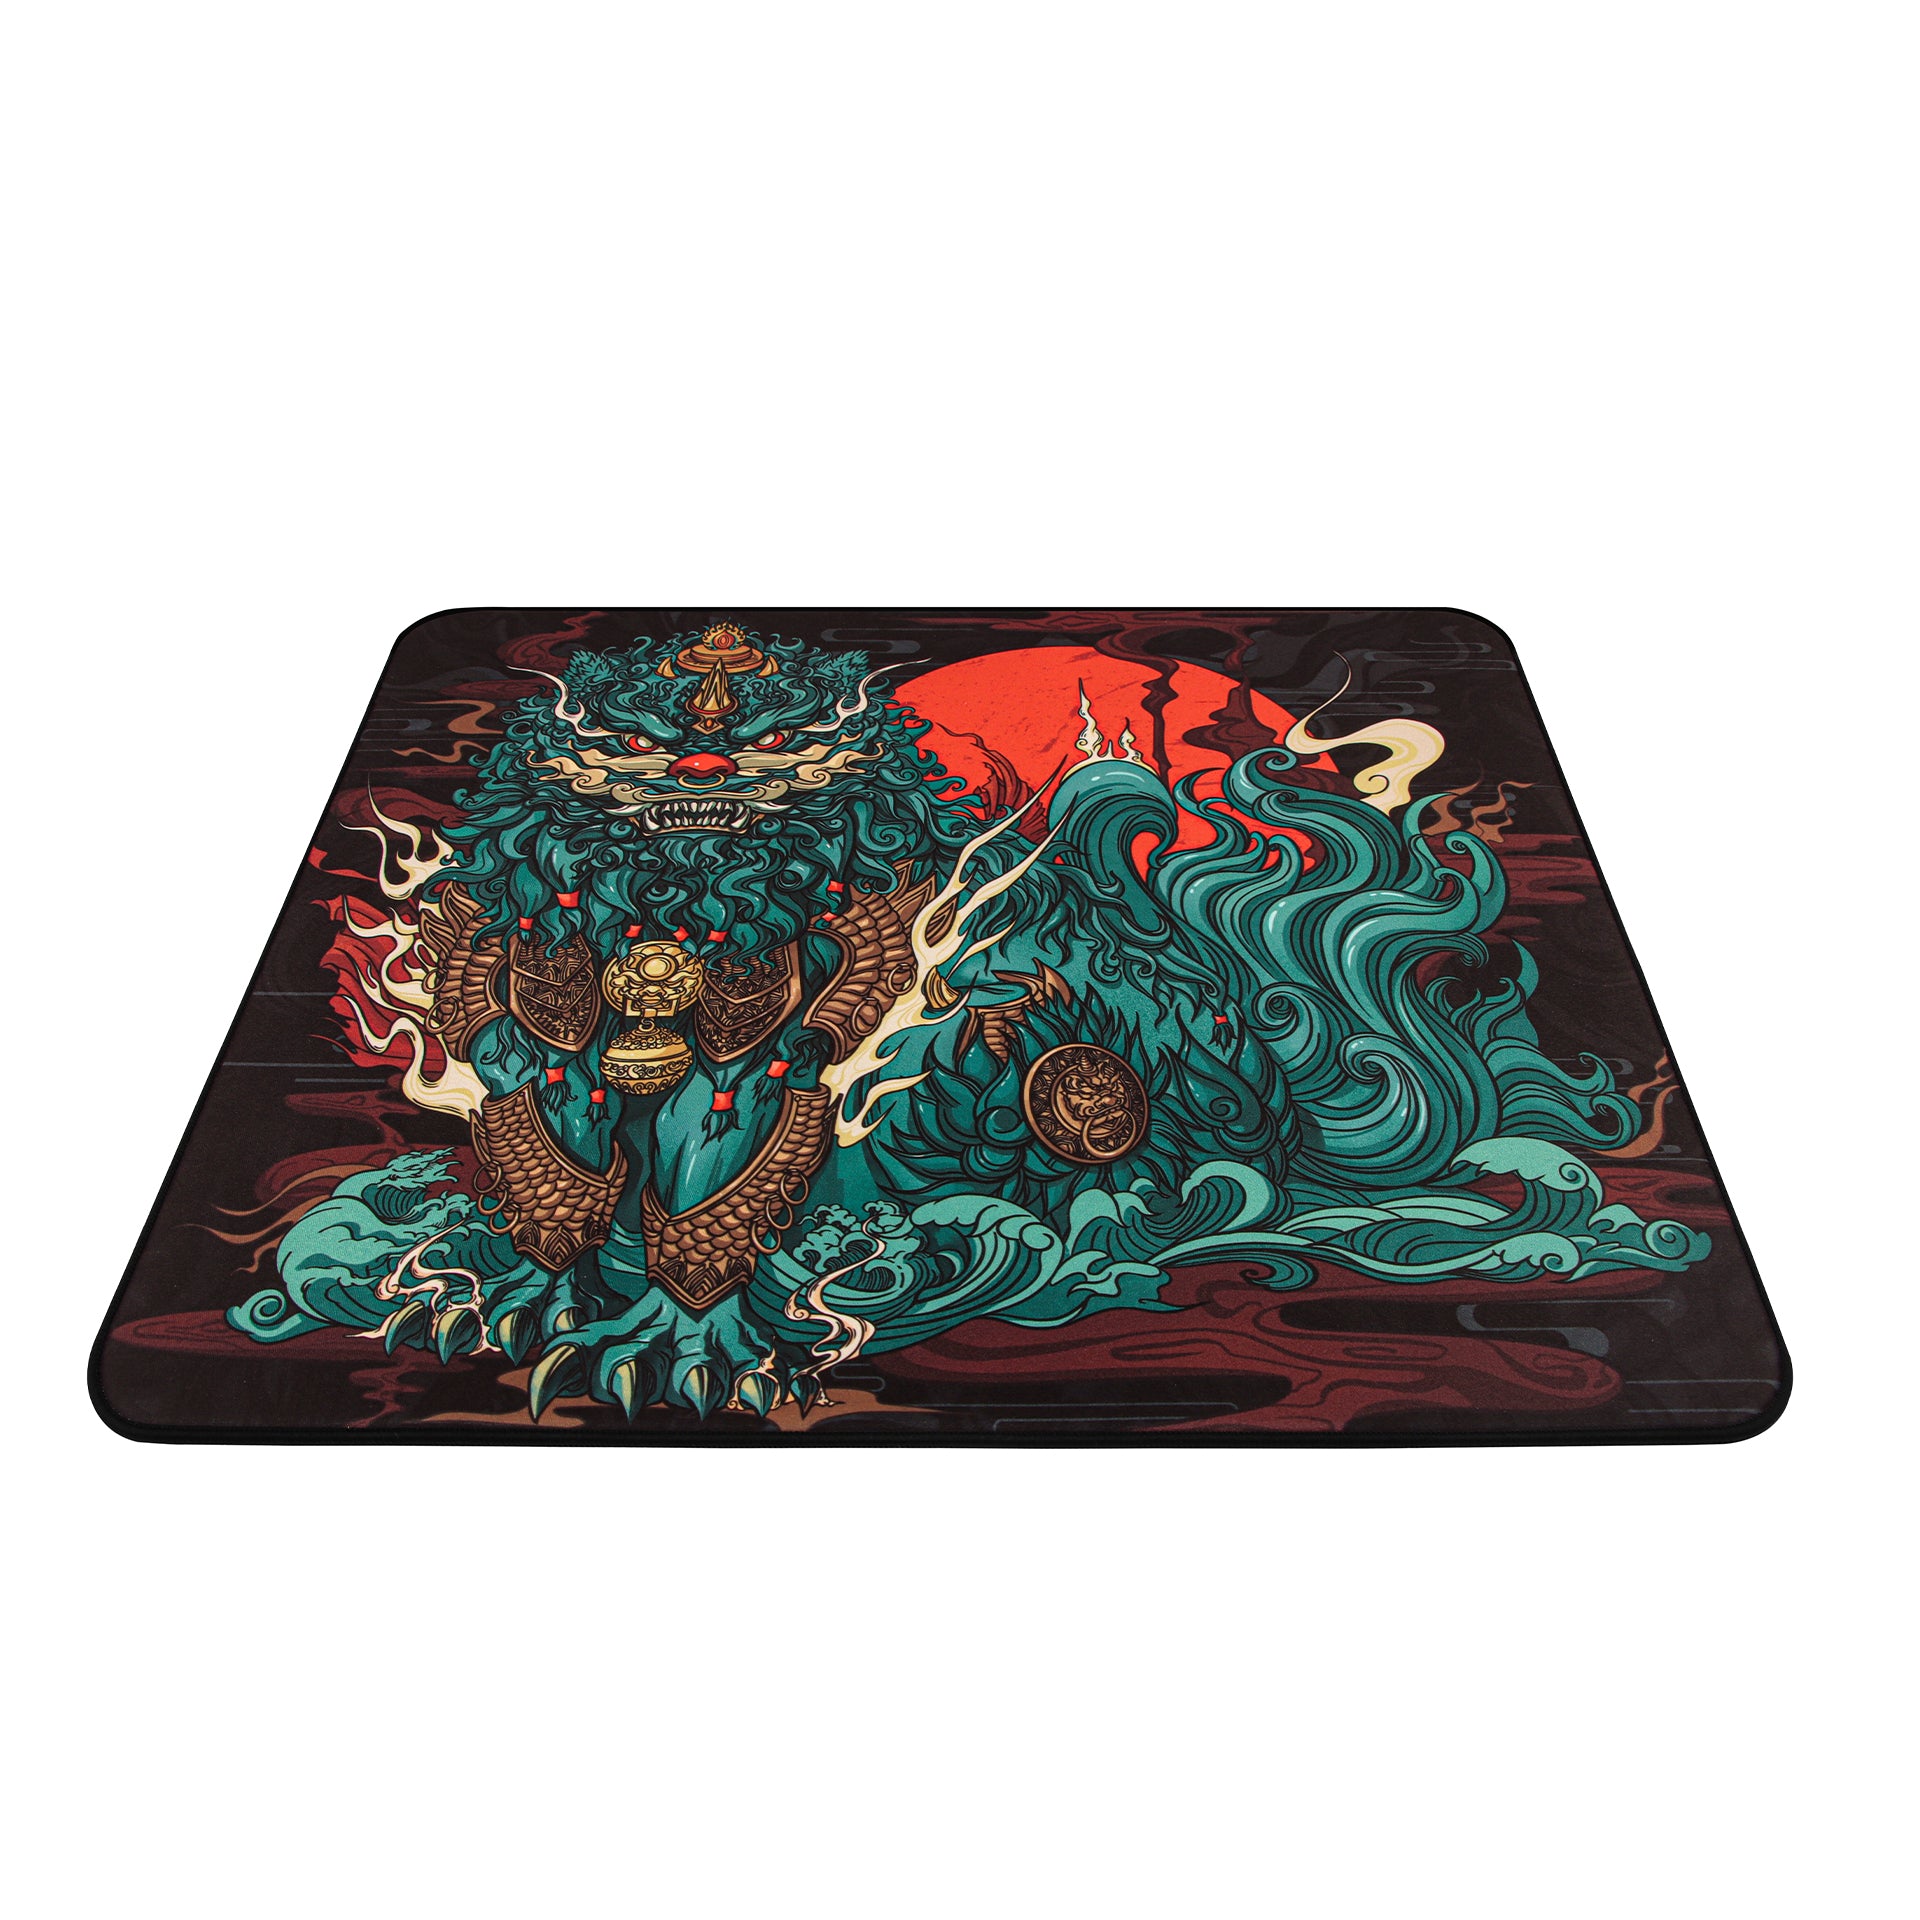 Qingsui 3 | Large Gaming Mousepad